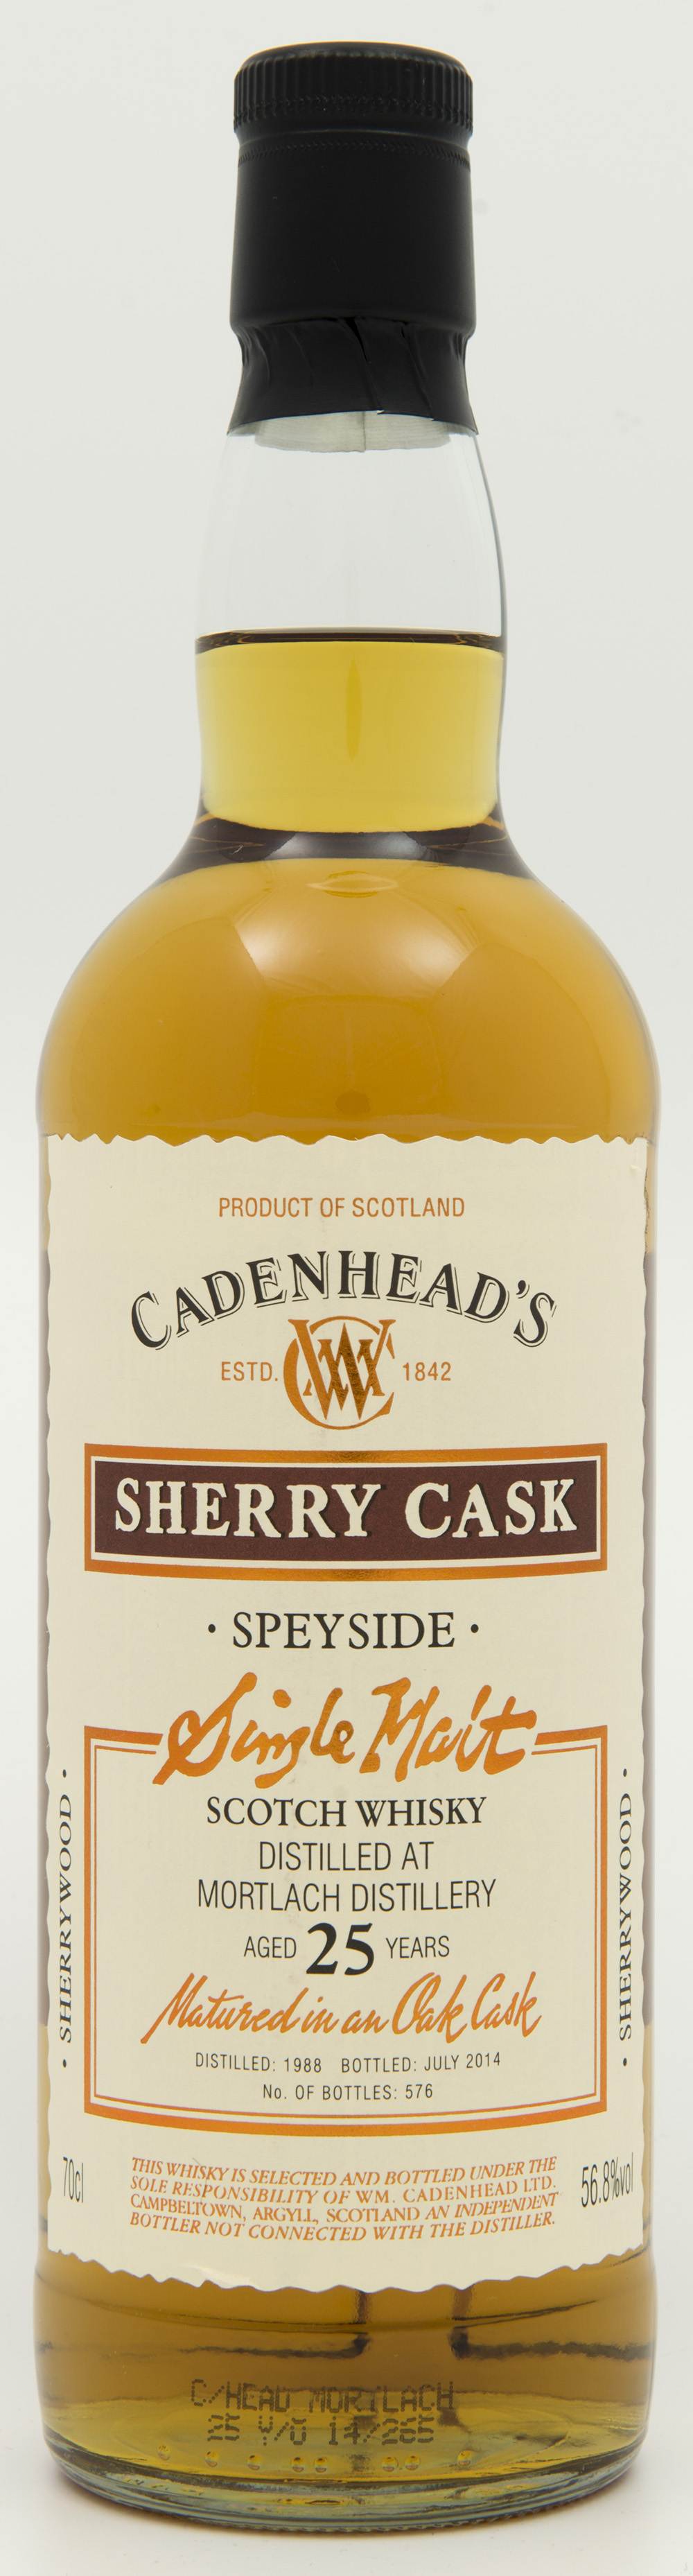 Billede: DSC_4811 - Cadenheads Sherry Cask - Mortlach - 25 years - bottle front.jpg